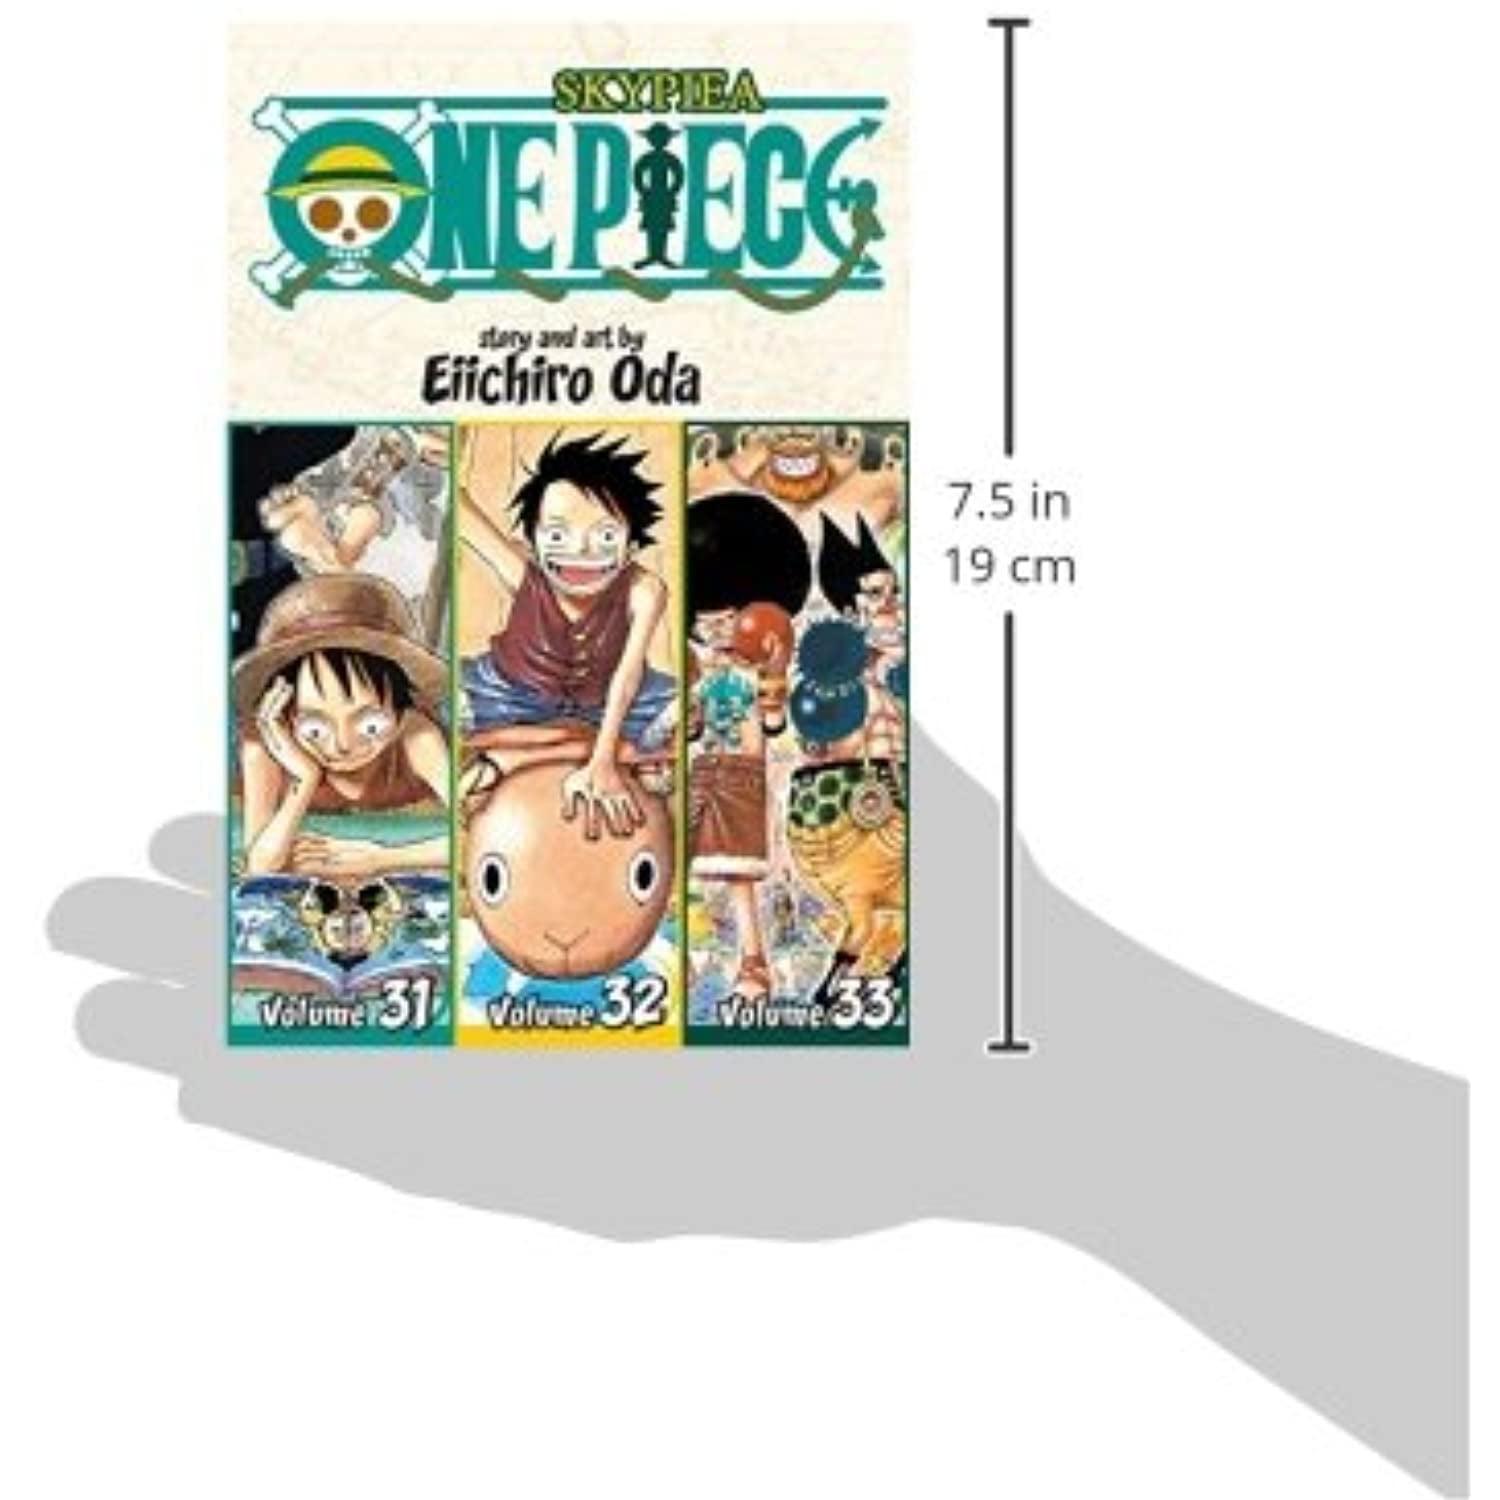 One Piece Omnibus Edition One Piece Omnibus Edition Vol 11 11 Includes Vols 31 32 33 Series 11 Edition 3 Paperback Walmart Com